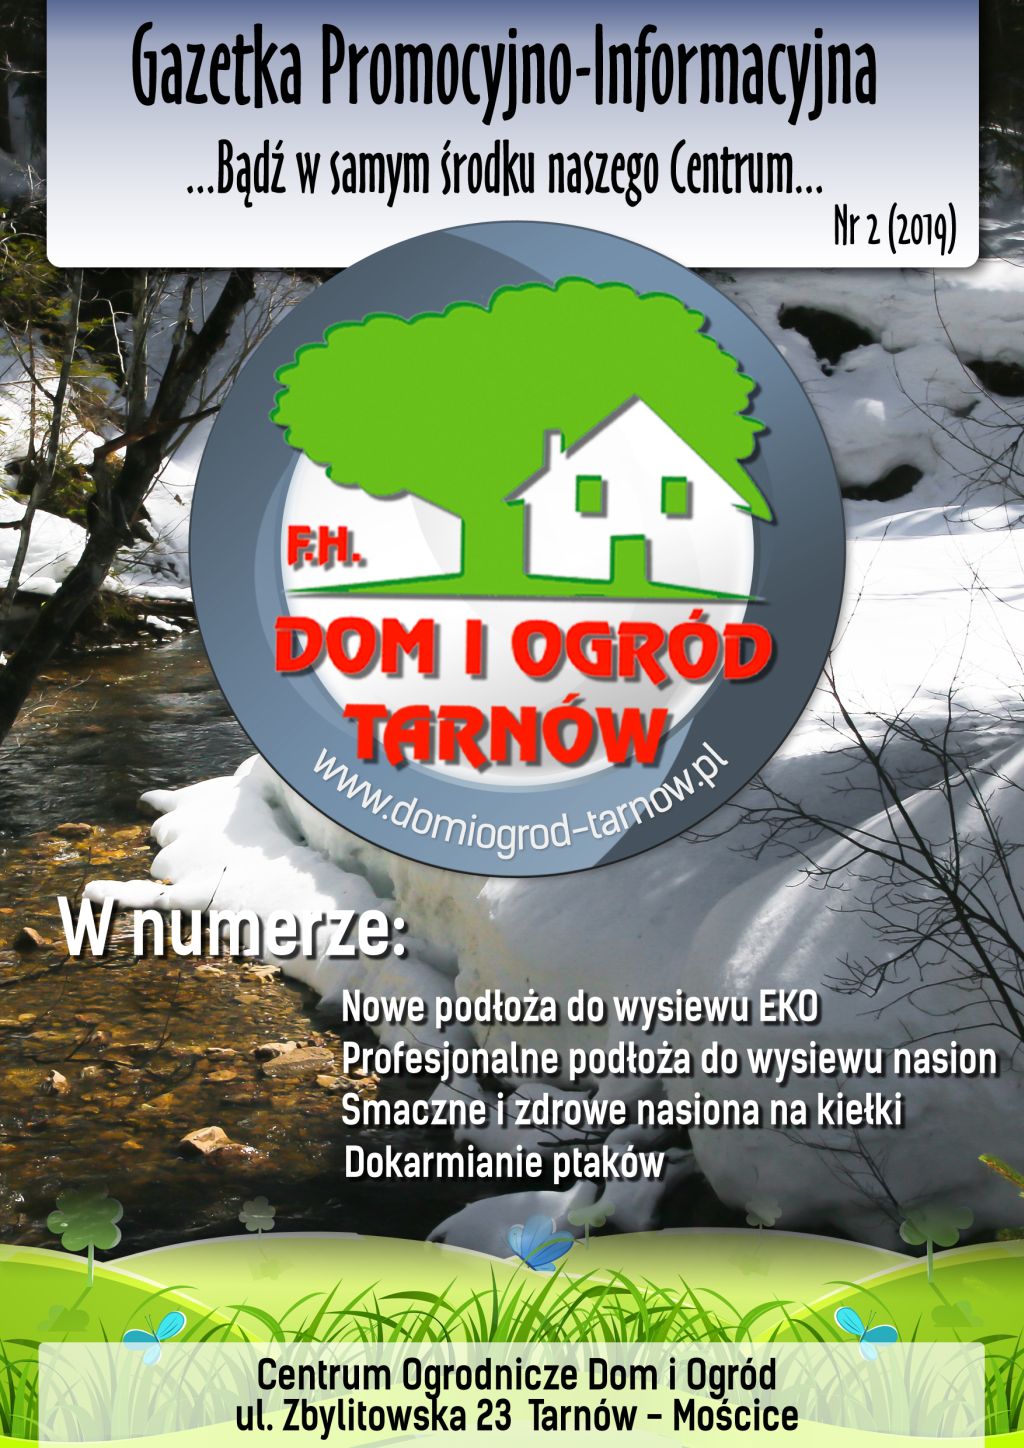 Gazetka Promocyjno-Informacyjna - 02/2020